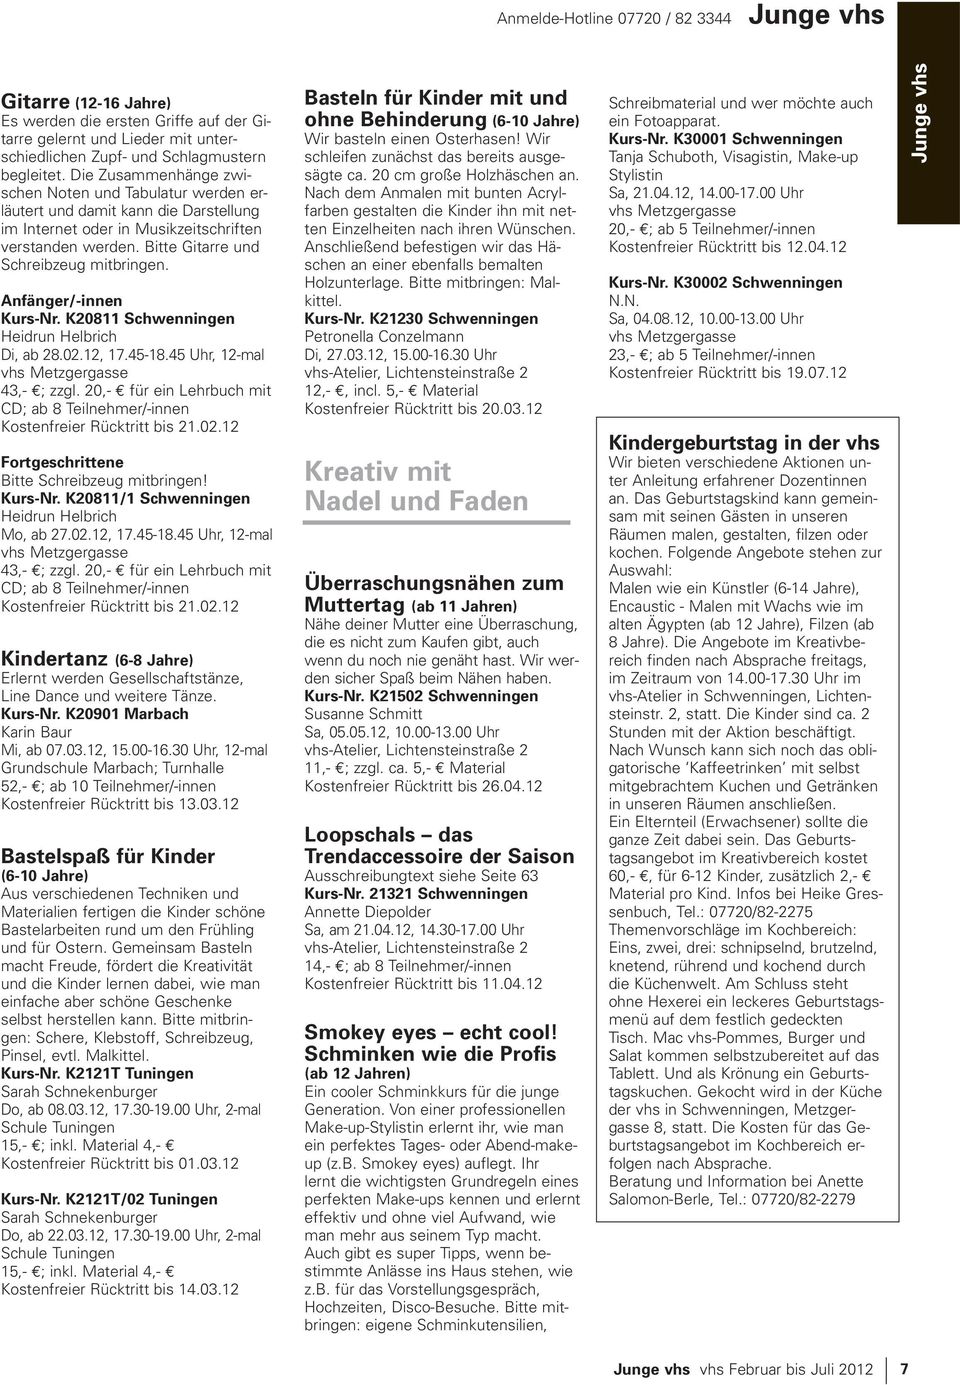 Anfänger/-innen Kurs-Nr. K20811 Schwenningen Heidrun Helbrich Di, ab 28.02.12, 17.45-18.45 Uhr, 12-mal 43,- ; zzgl. 20,- für ein Lehrbuch mit CD; ab 8 Teilnehmer/-innen Kostenfreier Rücktritt bis 21.